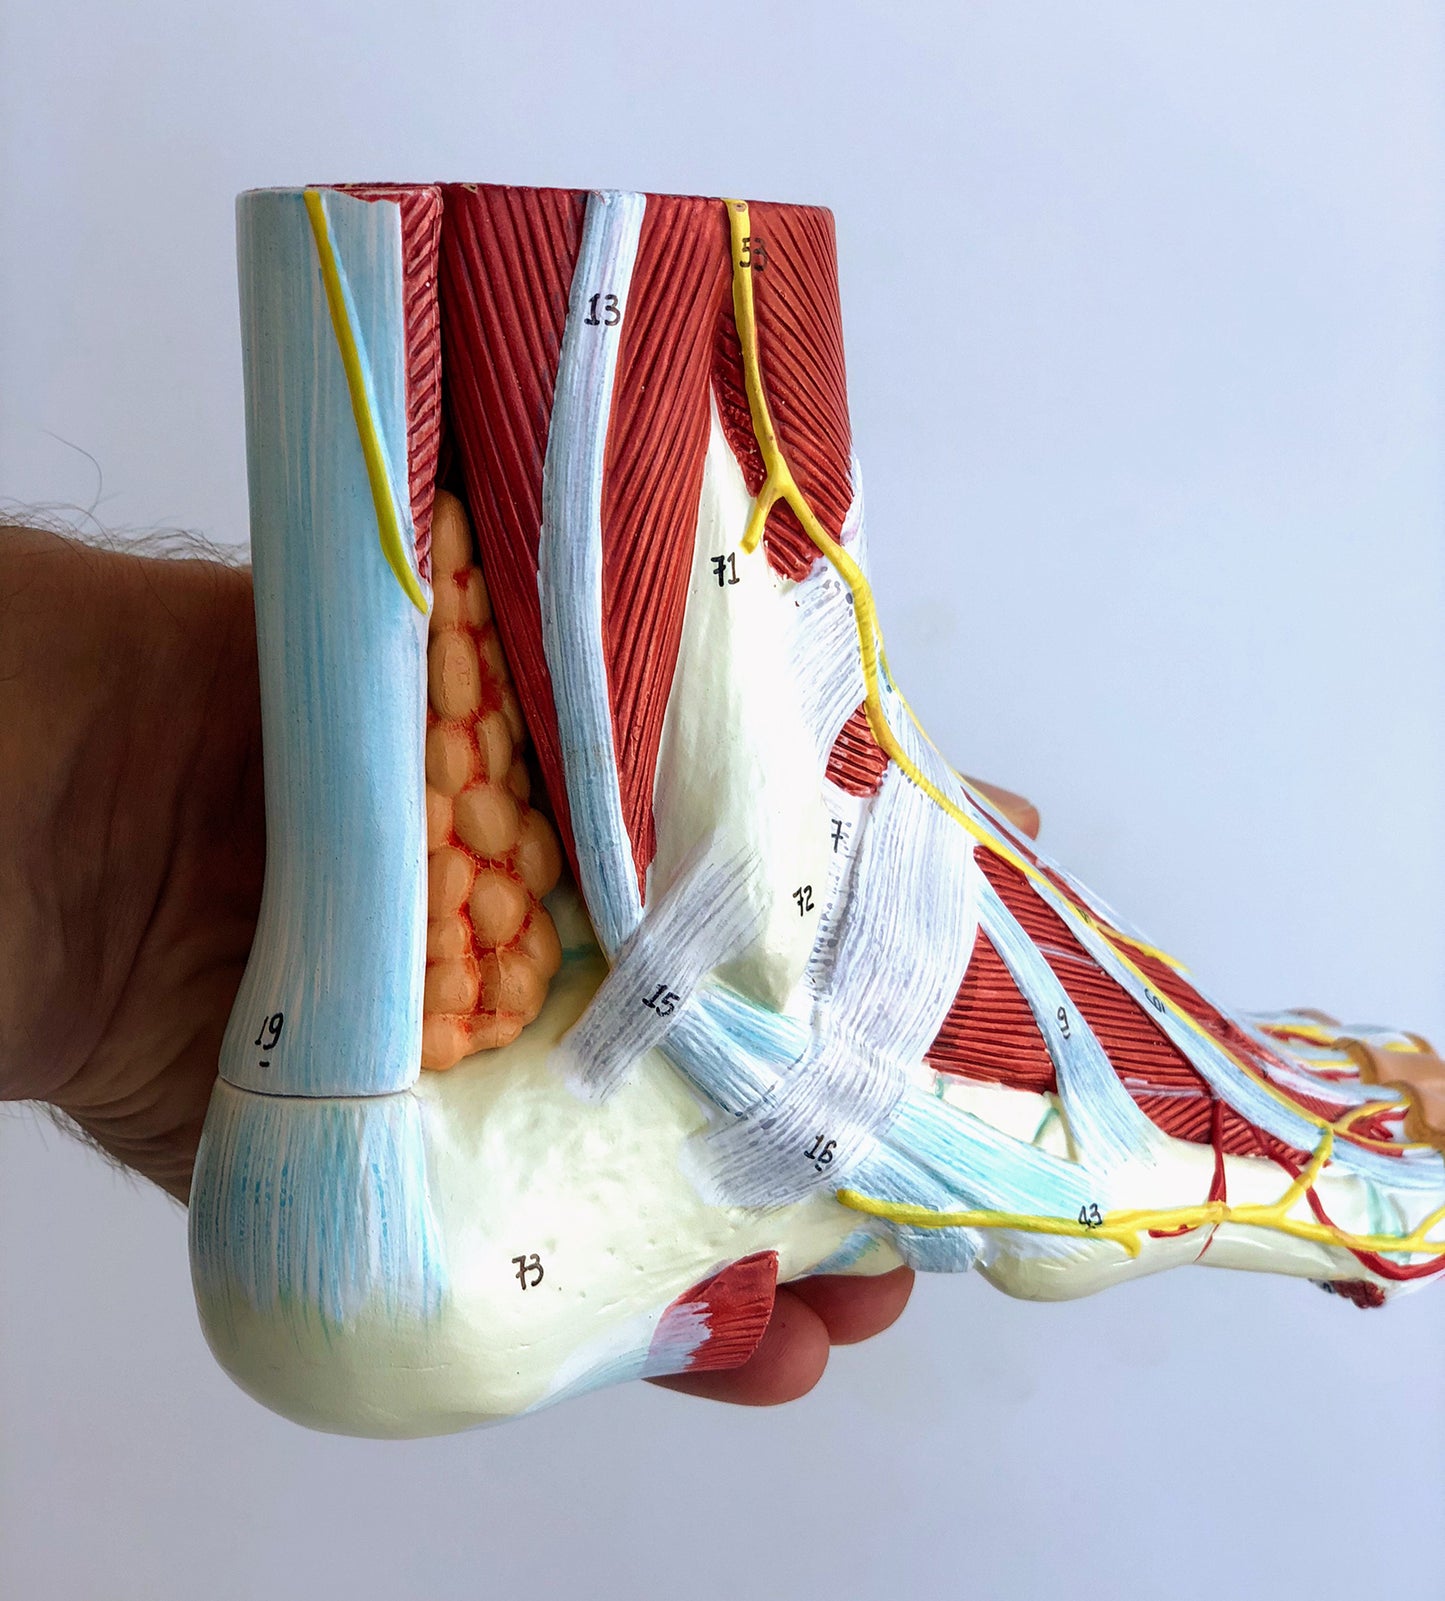 Komplet fodmodel med ledbånd, muskler, kar og nerver - kan adskilles i 9 dele